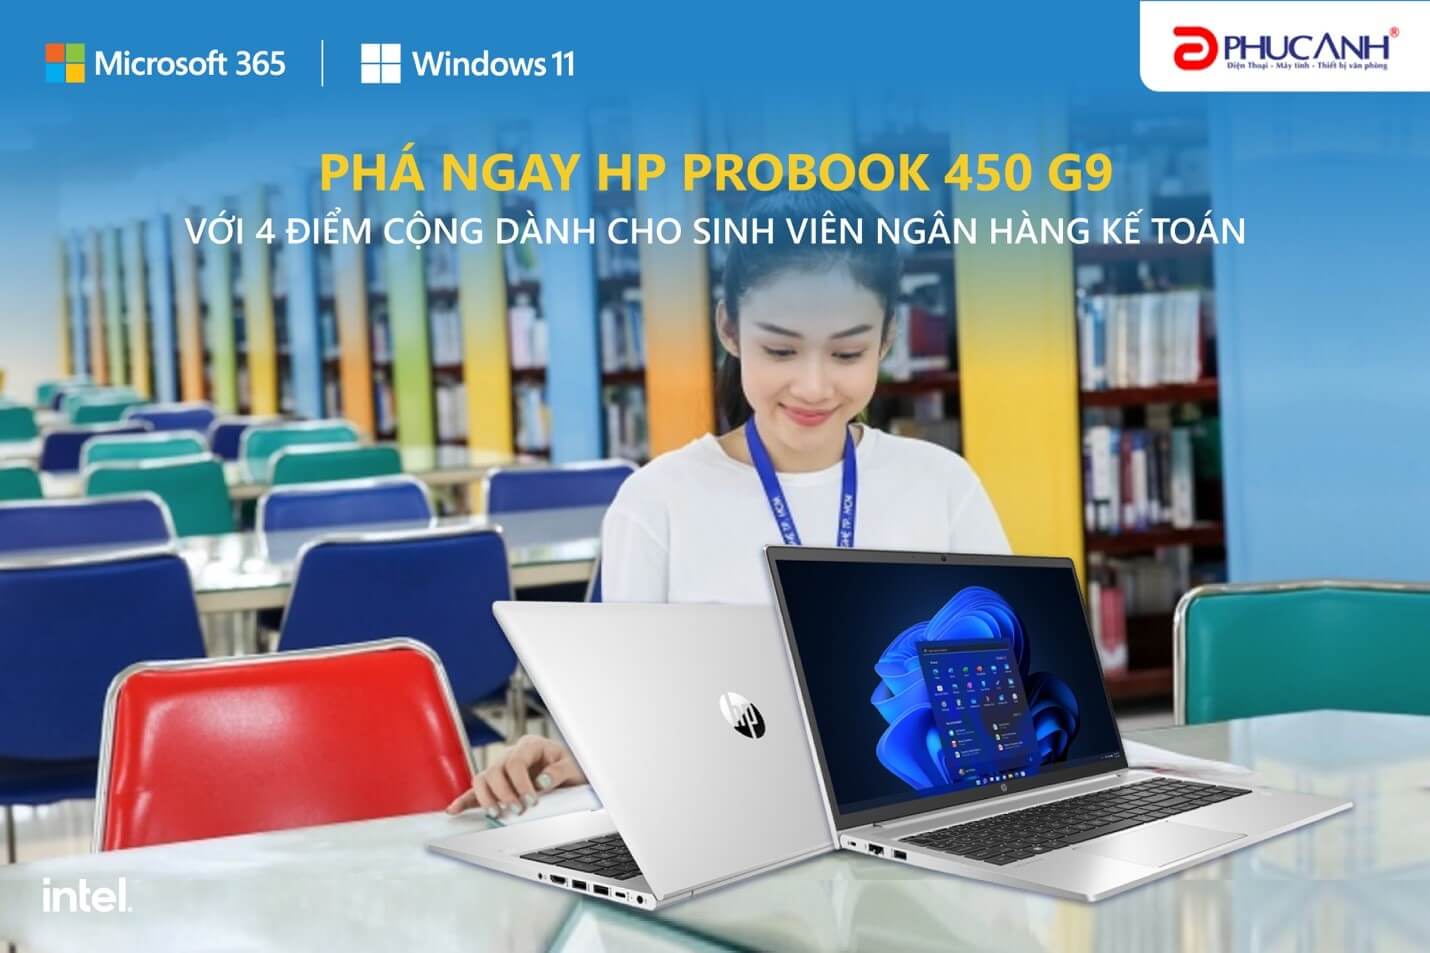 Dân ngân hàng kế toán dùng laptop gì để ngon – bổ - rẻ?? Khám phá ngay HP Probook 450 G9 với 4 điểm cộng